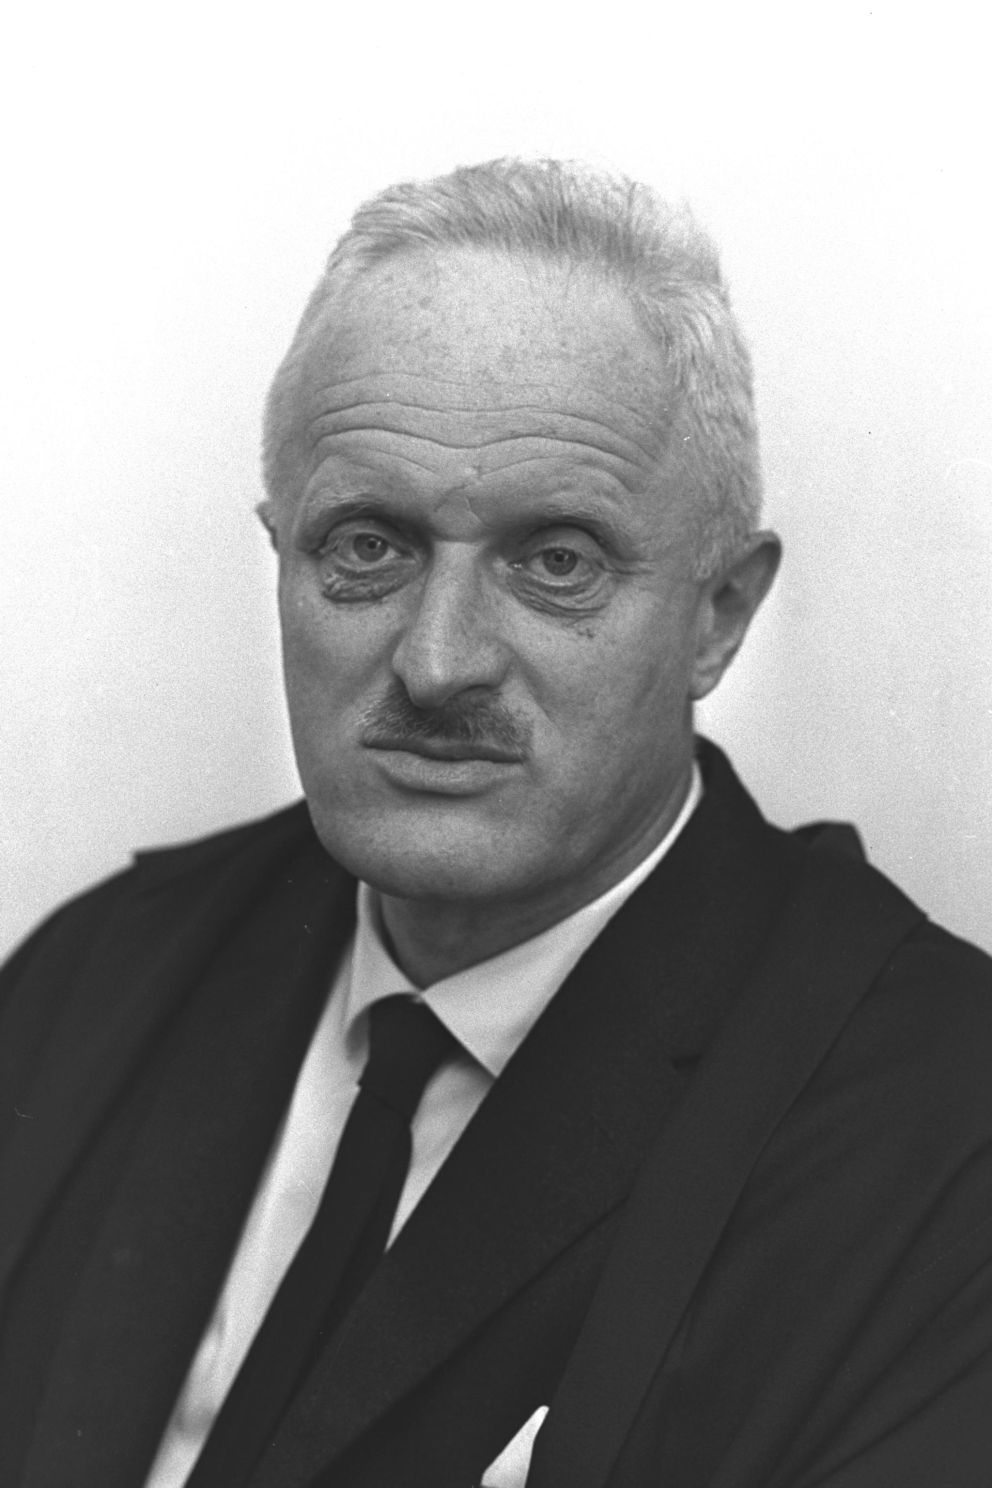 Supreme Court Justice Yoel Zussman 1962